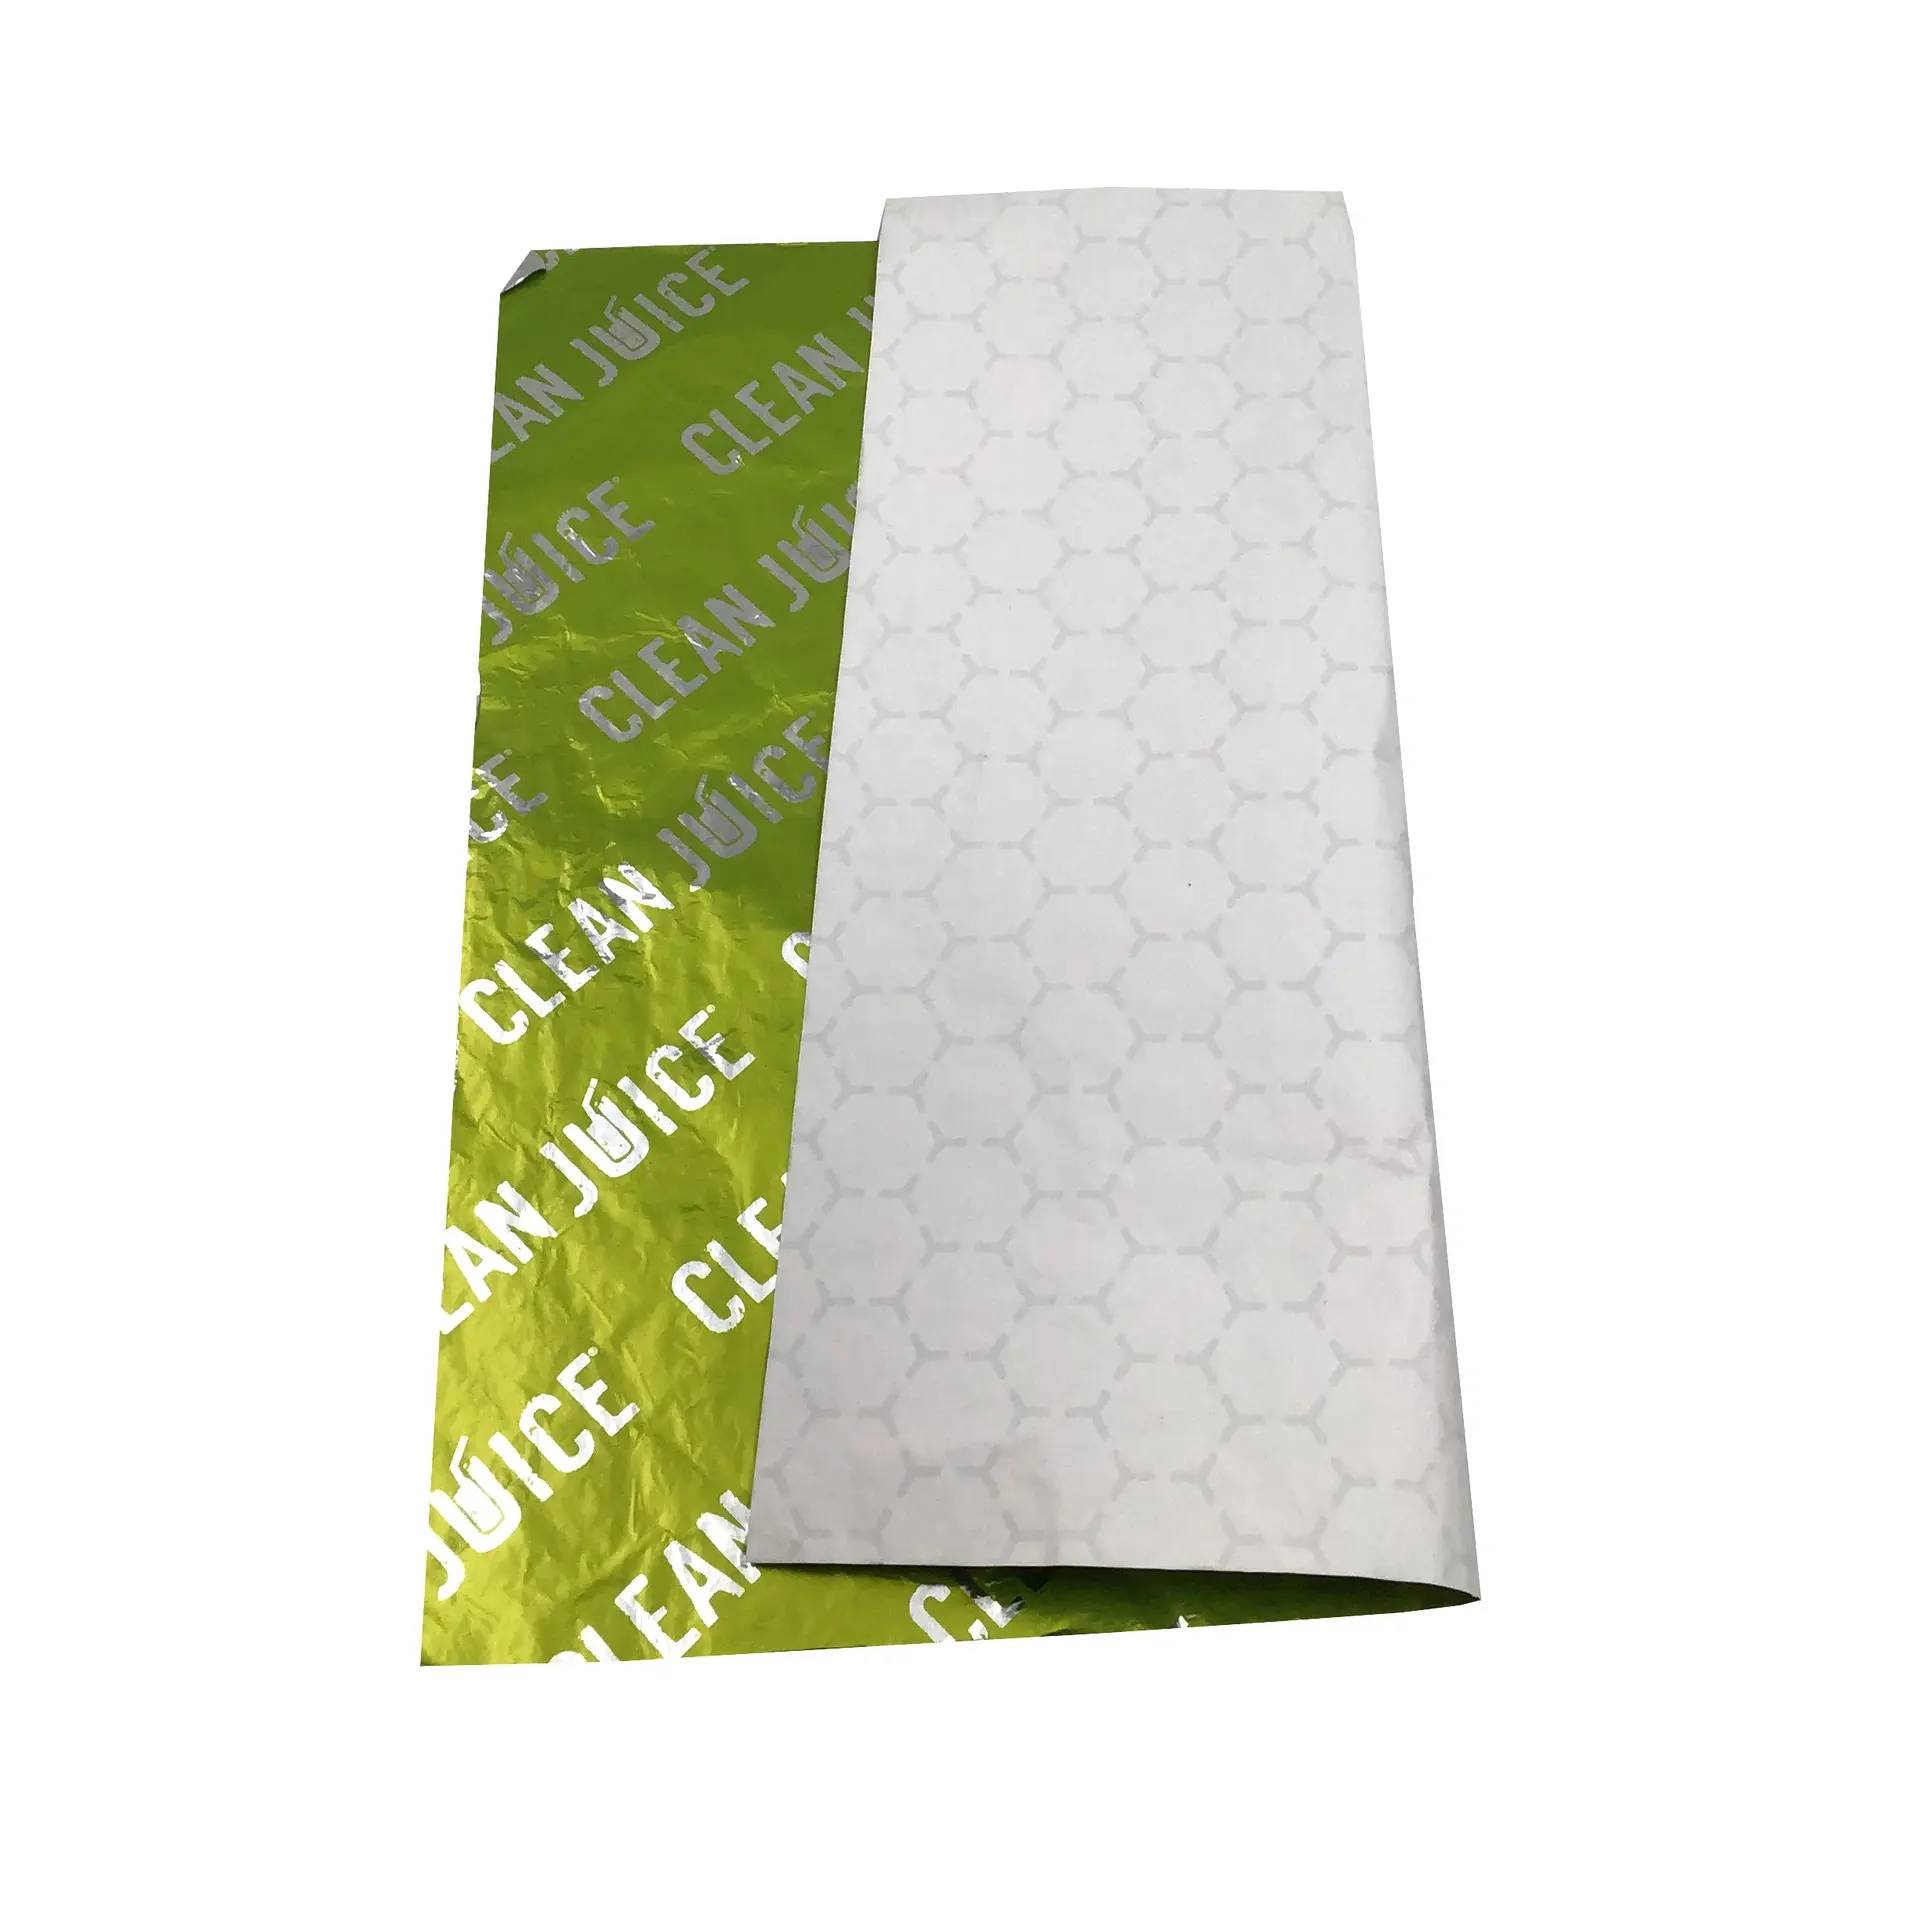 Conception en nid d'abeille de haute qualité feuille d'argent emballage de papier alimentaire impression personnalisée or couleur Sandwich Hamburger papier d'aluminium